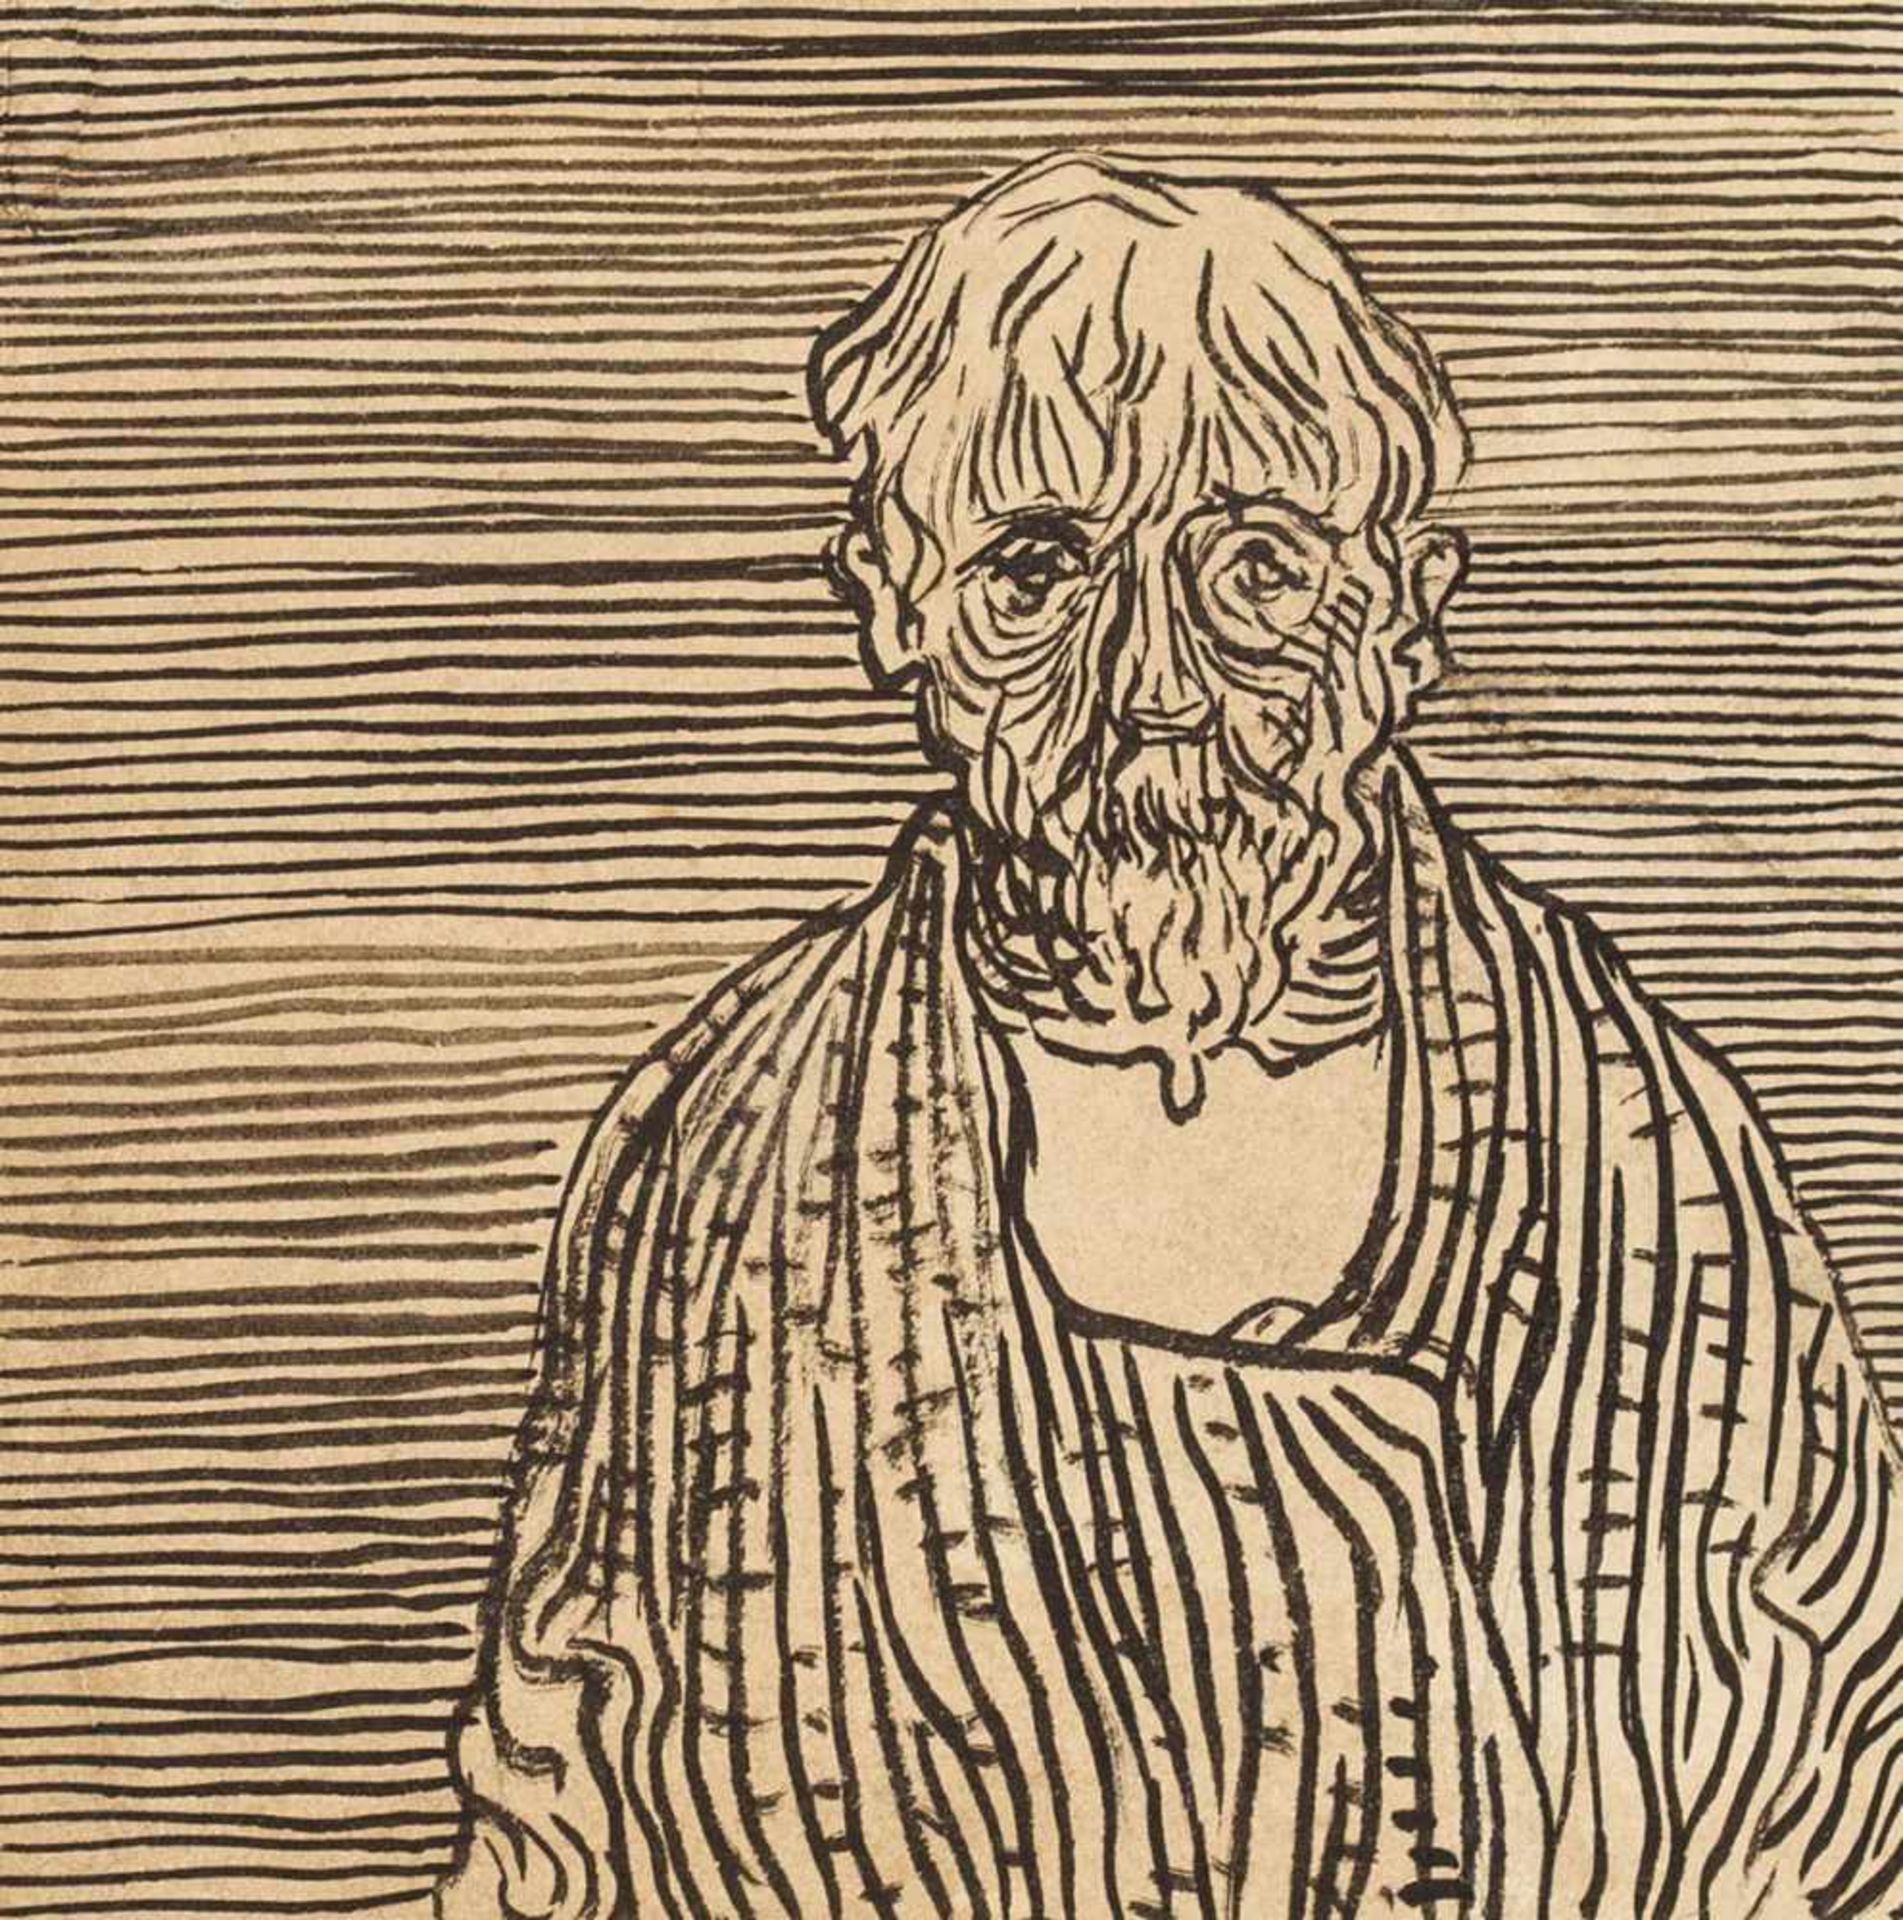 Kubin, Alfred(1877-1959). Bildnis eines bärtigen Mannes en face. Zeichnung. Tuschpinsel in Schwarz